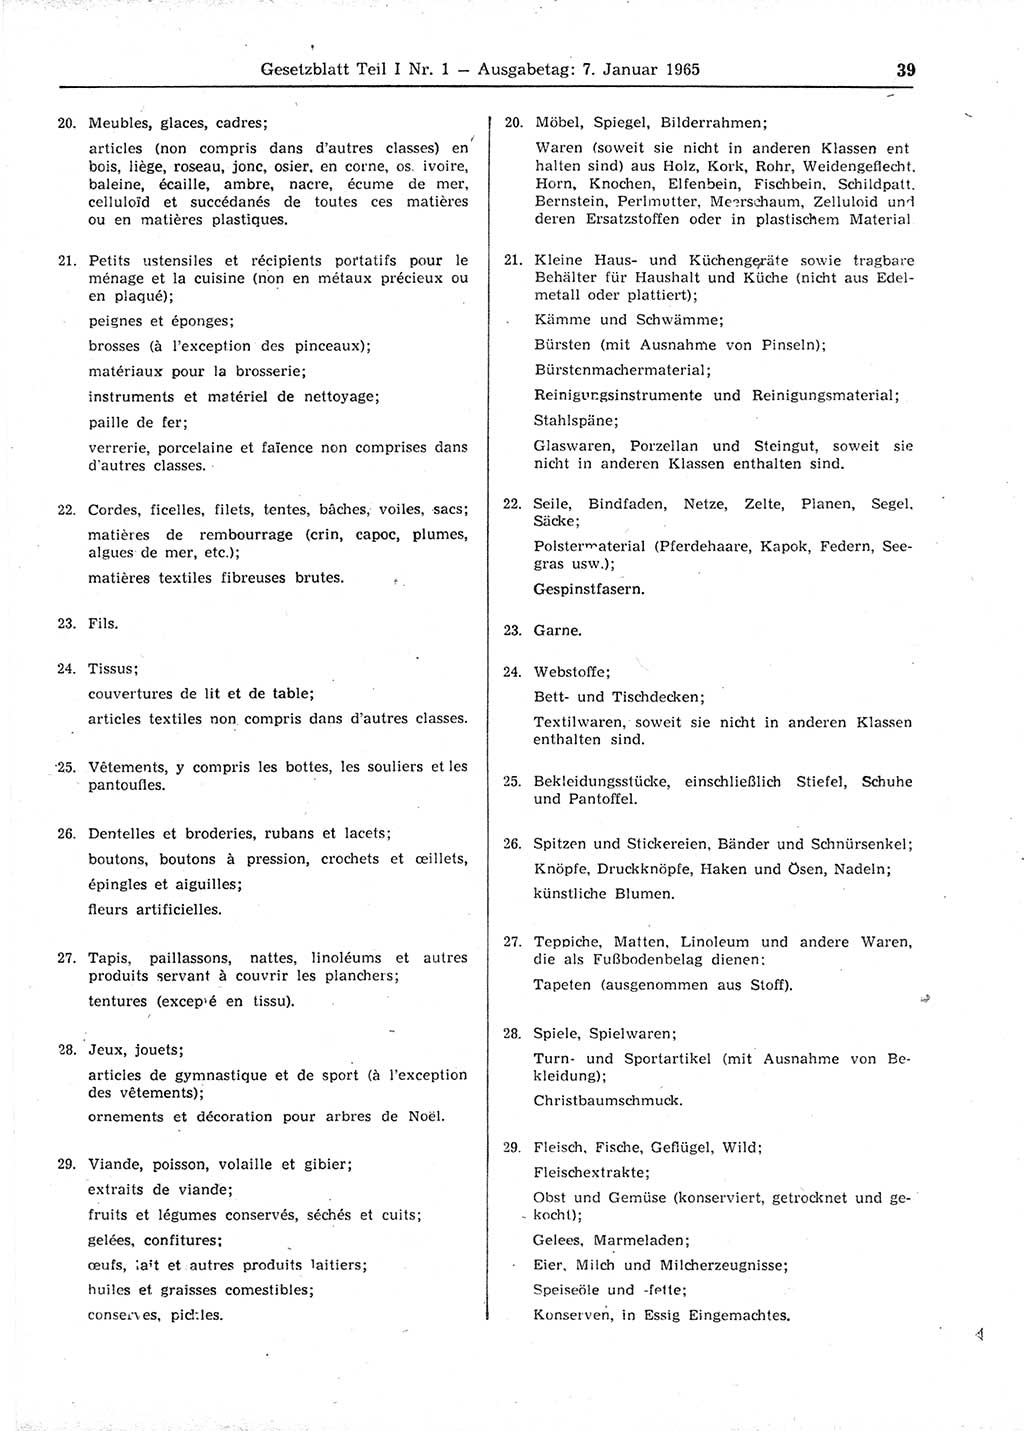 Gesetzblatt (GBl.) der Deutschen Demokratischen Republik (DDR) Teil Ⅰ 1965, Seite 39 (GBl. DDR Ⅰ 1965, S. 39)